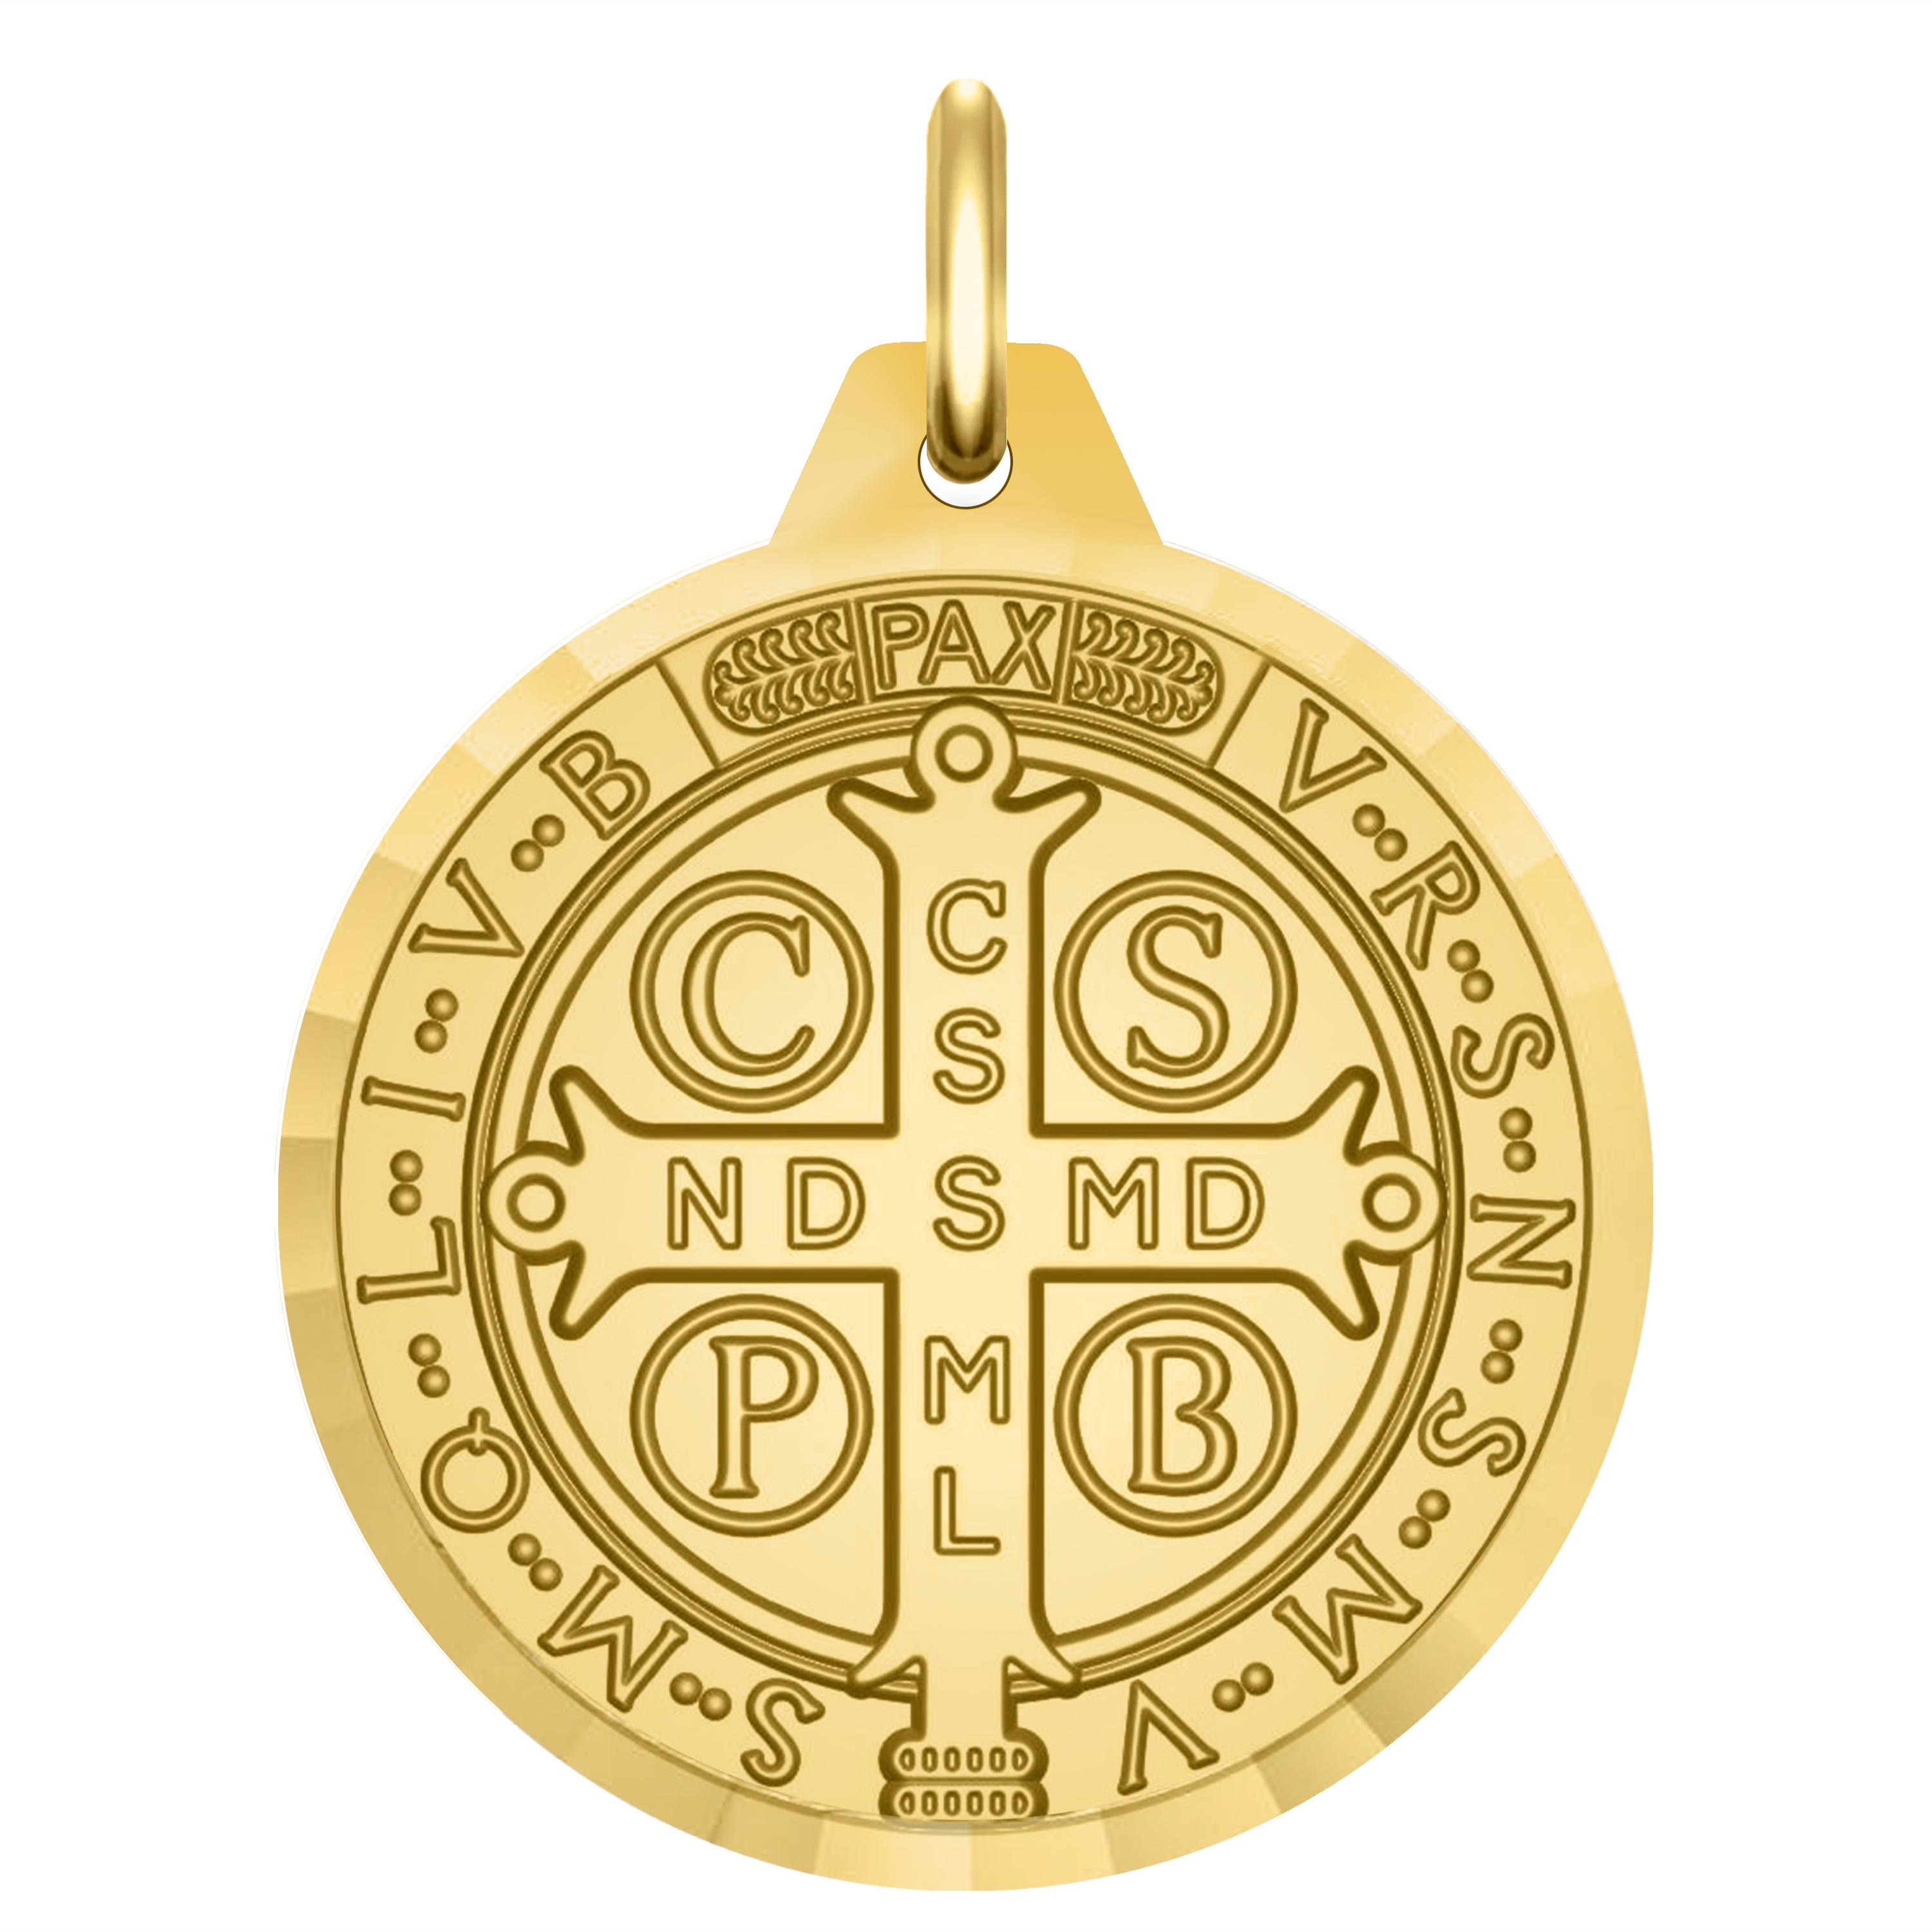 Médaille de Saint Benoit 40mm - MAISON HALLEUX SRL